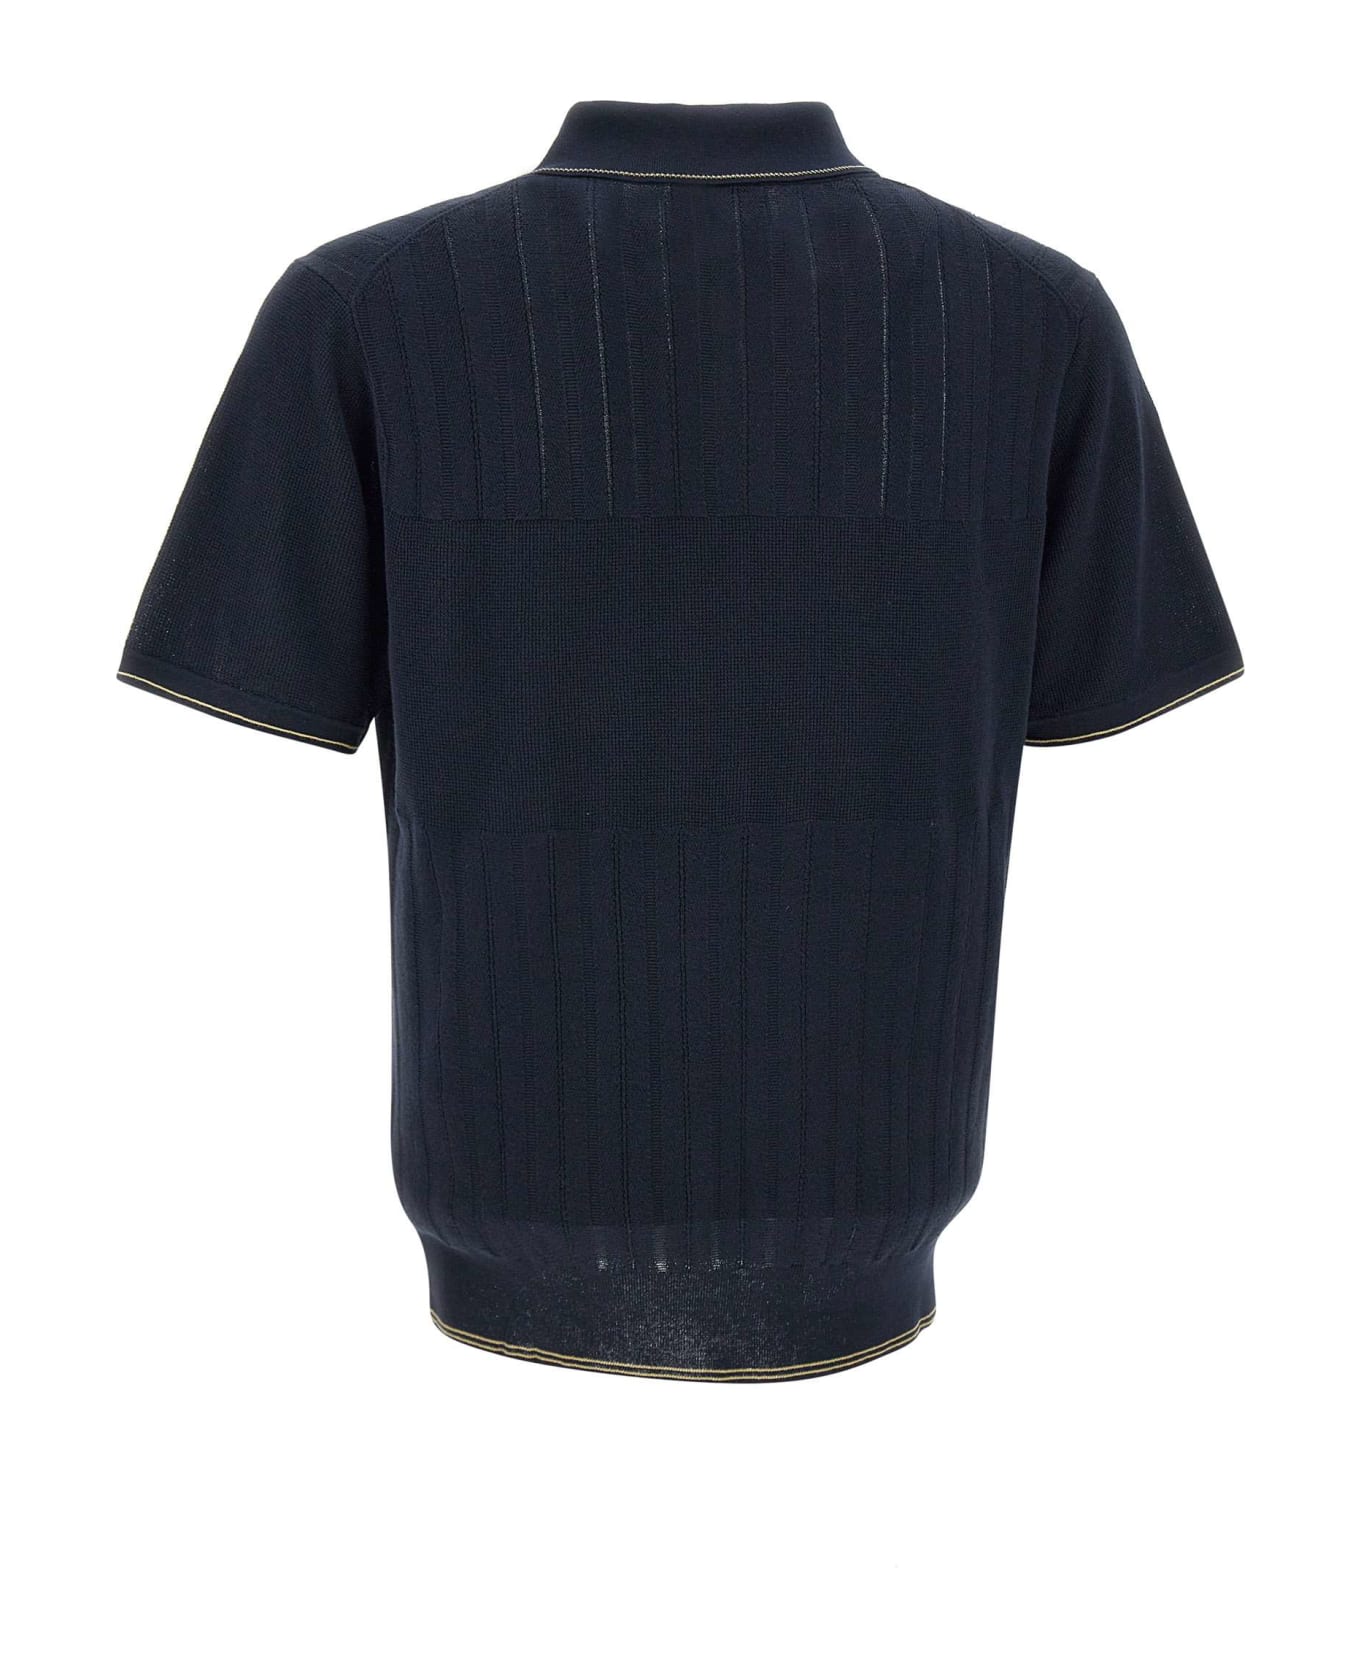 Paul Smith Organic Cotton Polo Shirt - NAVY